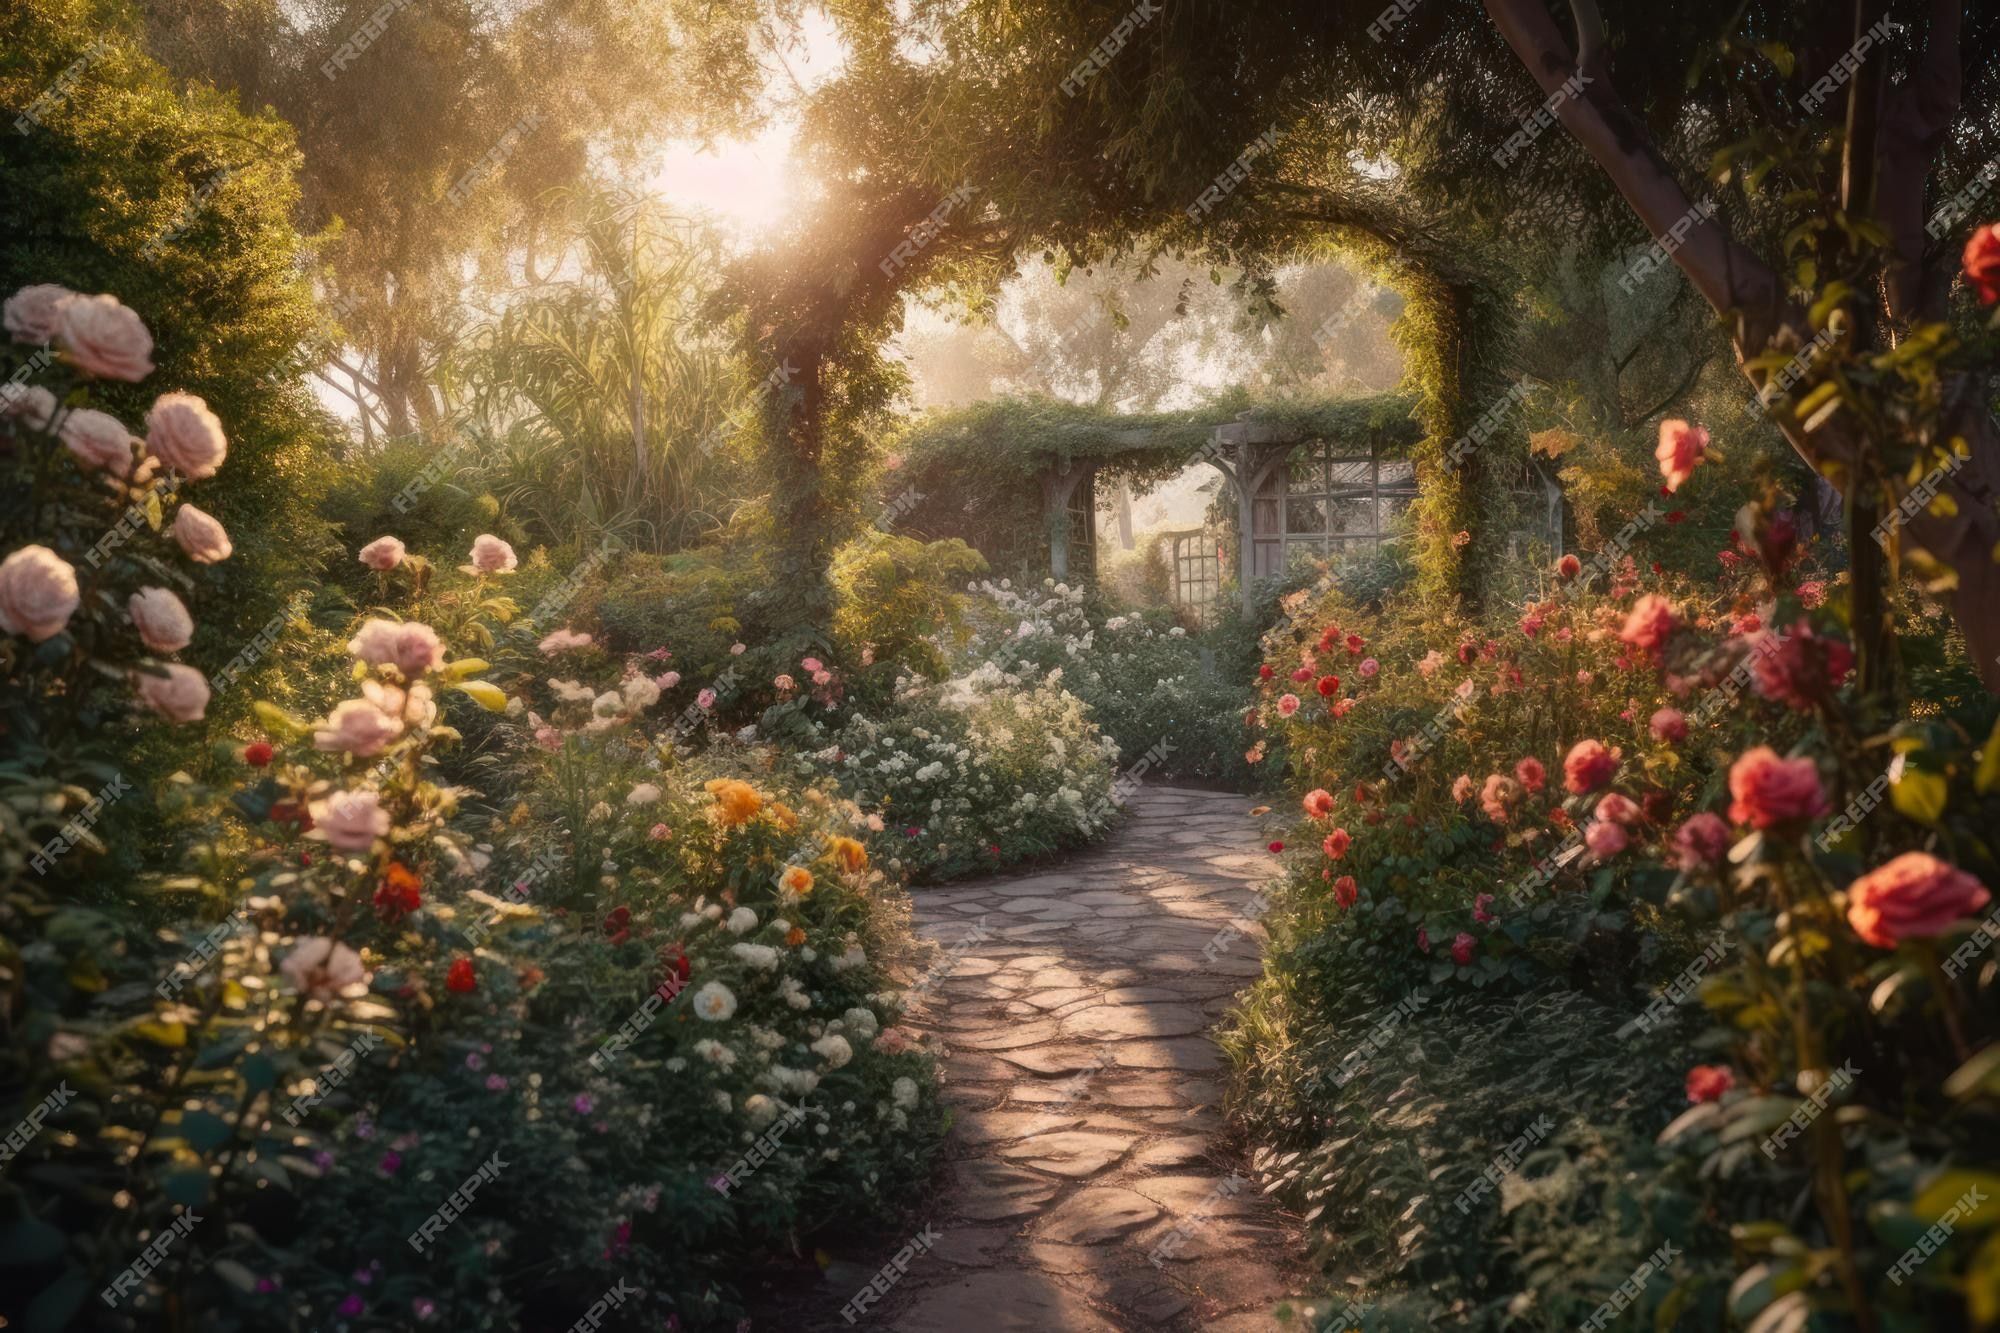 Fairy Garden Image